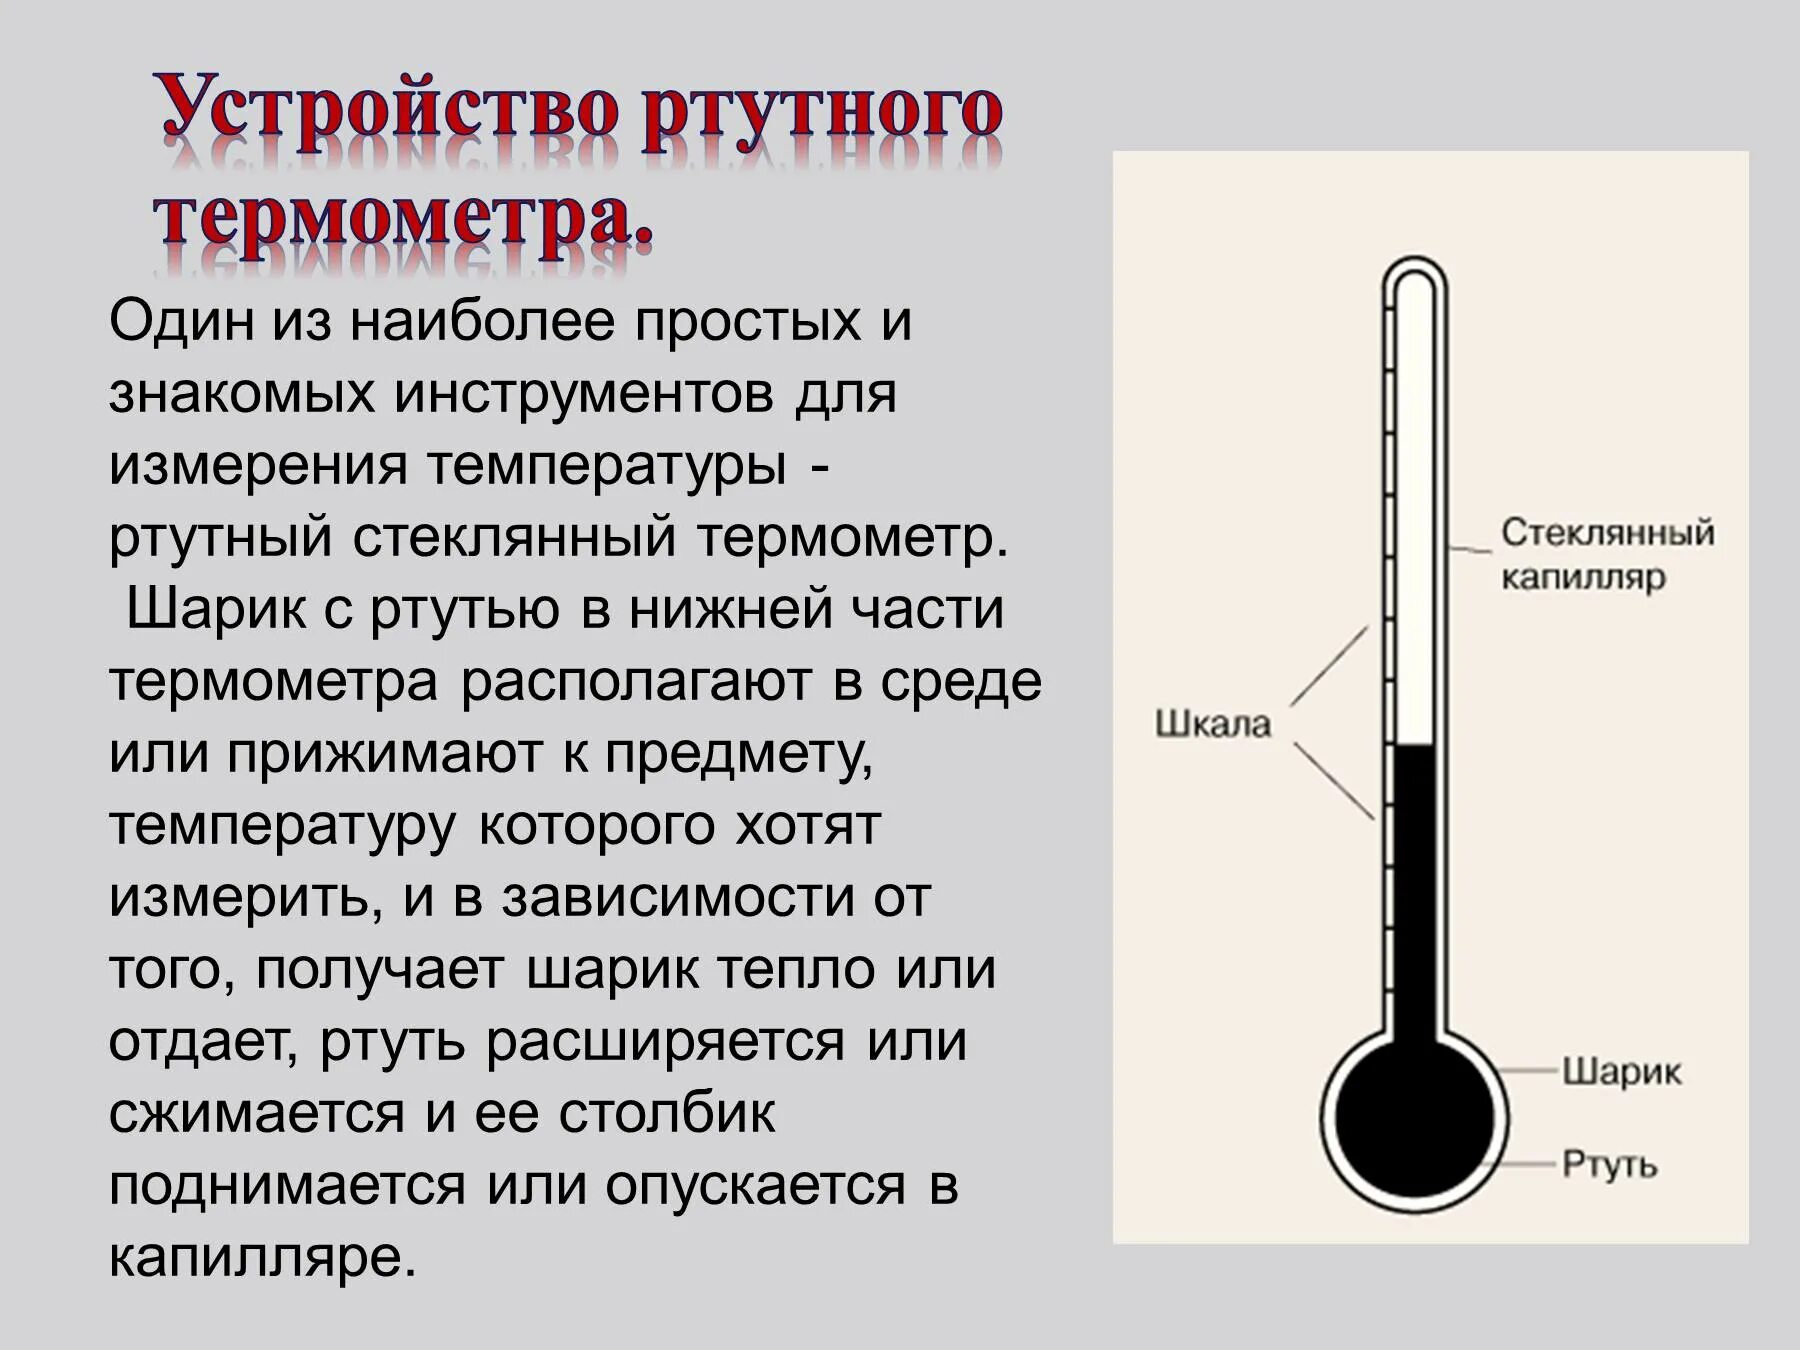 Как устроен ртутный градусник для измерения температуры тела. Как устроен ртутный термометр. Как устроен ртутный градусник схема. Как устроен градусник ртутный для измерения температуры. Резервуар с ртутью